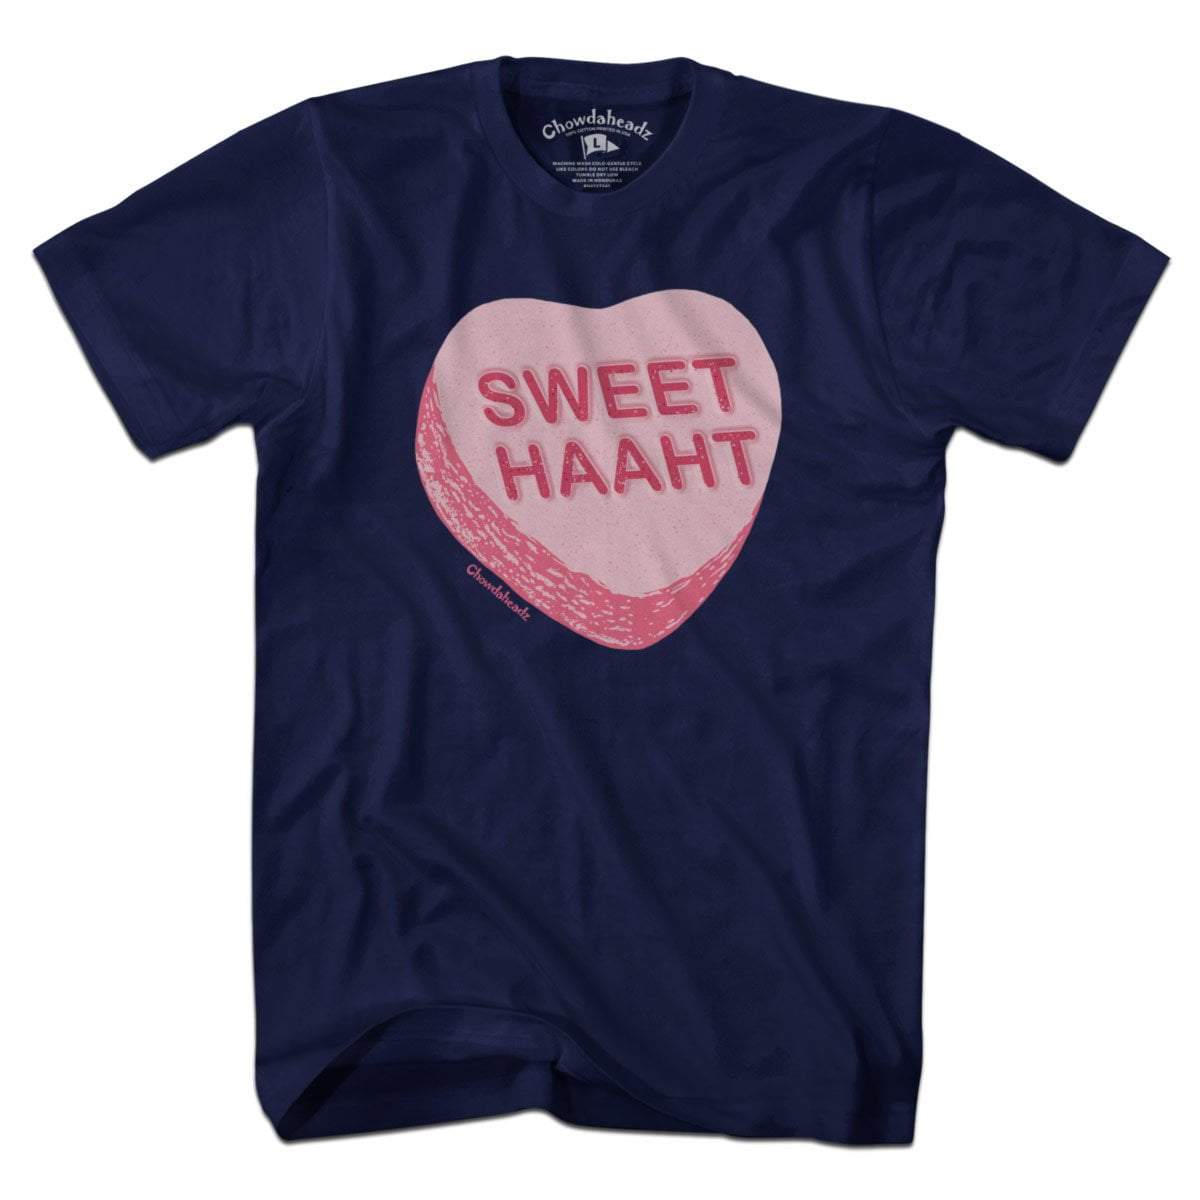 Sweet Haaht Candy Heart T-Shirt - Chowdaheadz